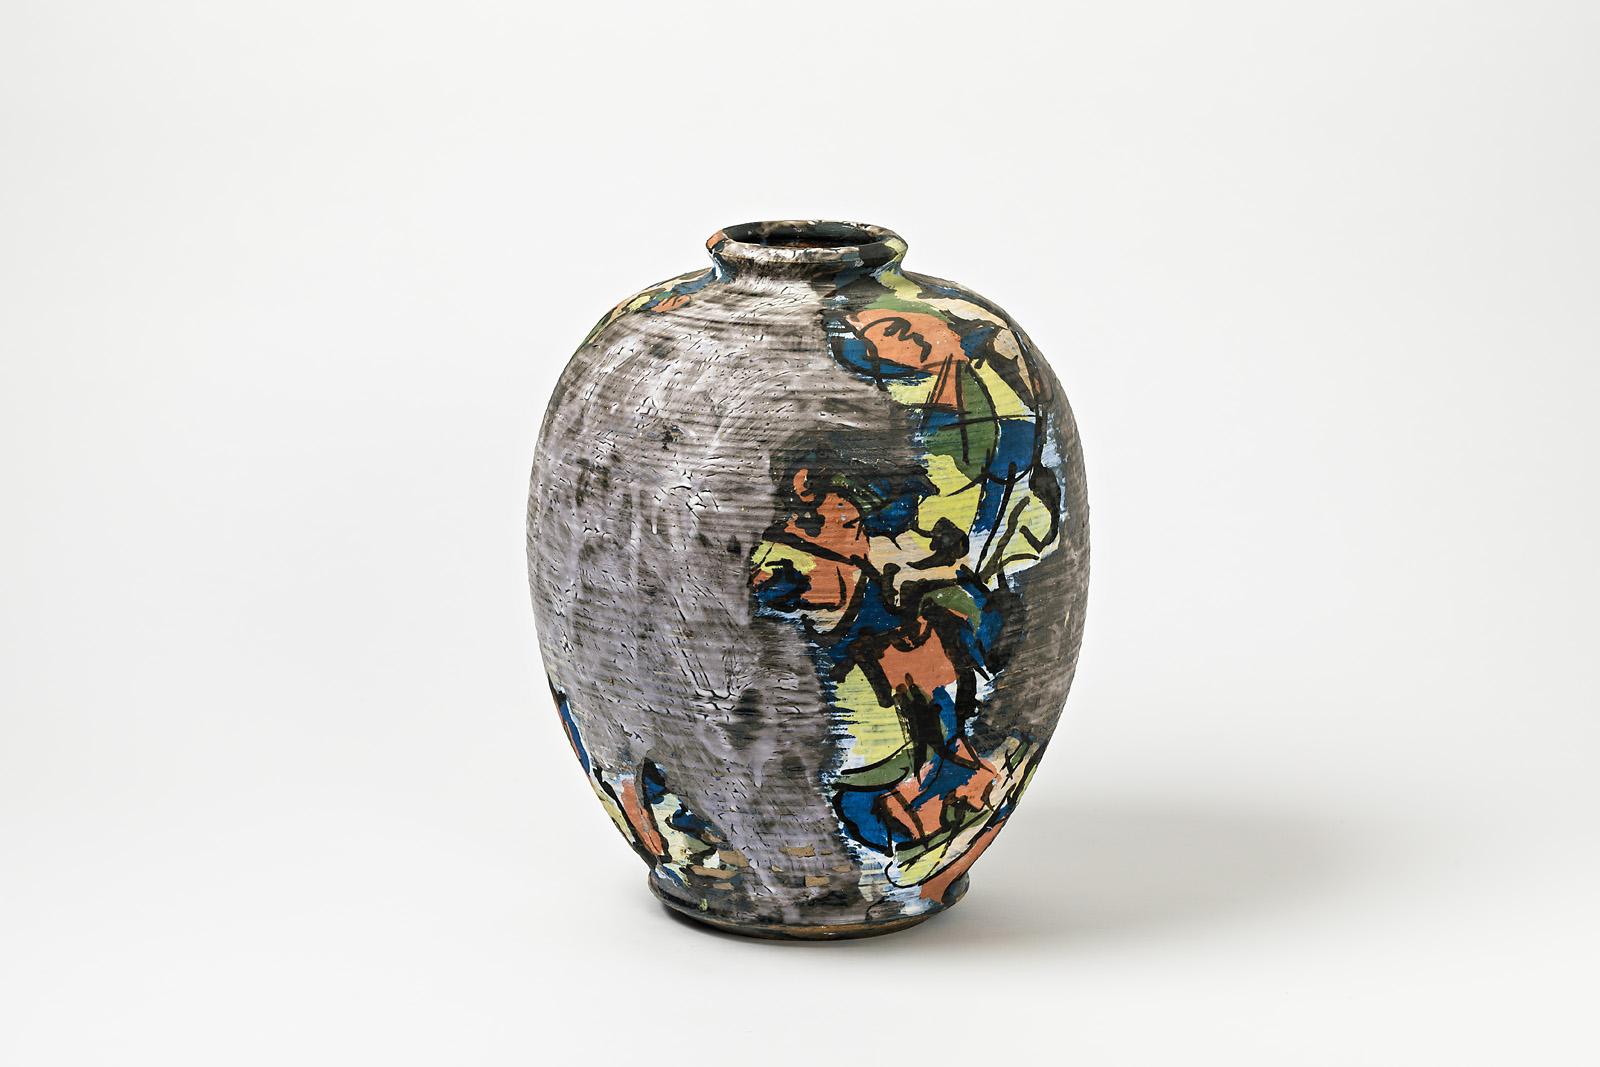 Keramikvase mit Glasurdekor von Michel Lanos (1926-2005).
Perfekte originelle Dekorationen.
Künstlermonogramm unter dem Sockel,
um 1990.
Einzigartiges Stück.